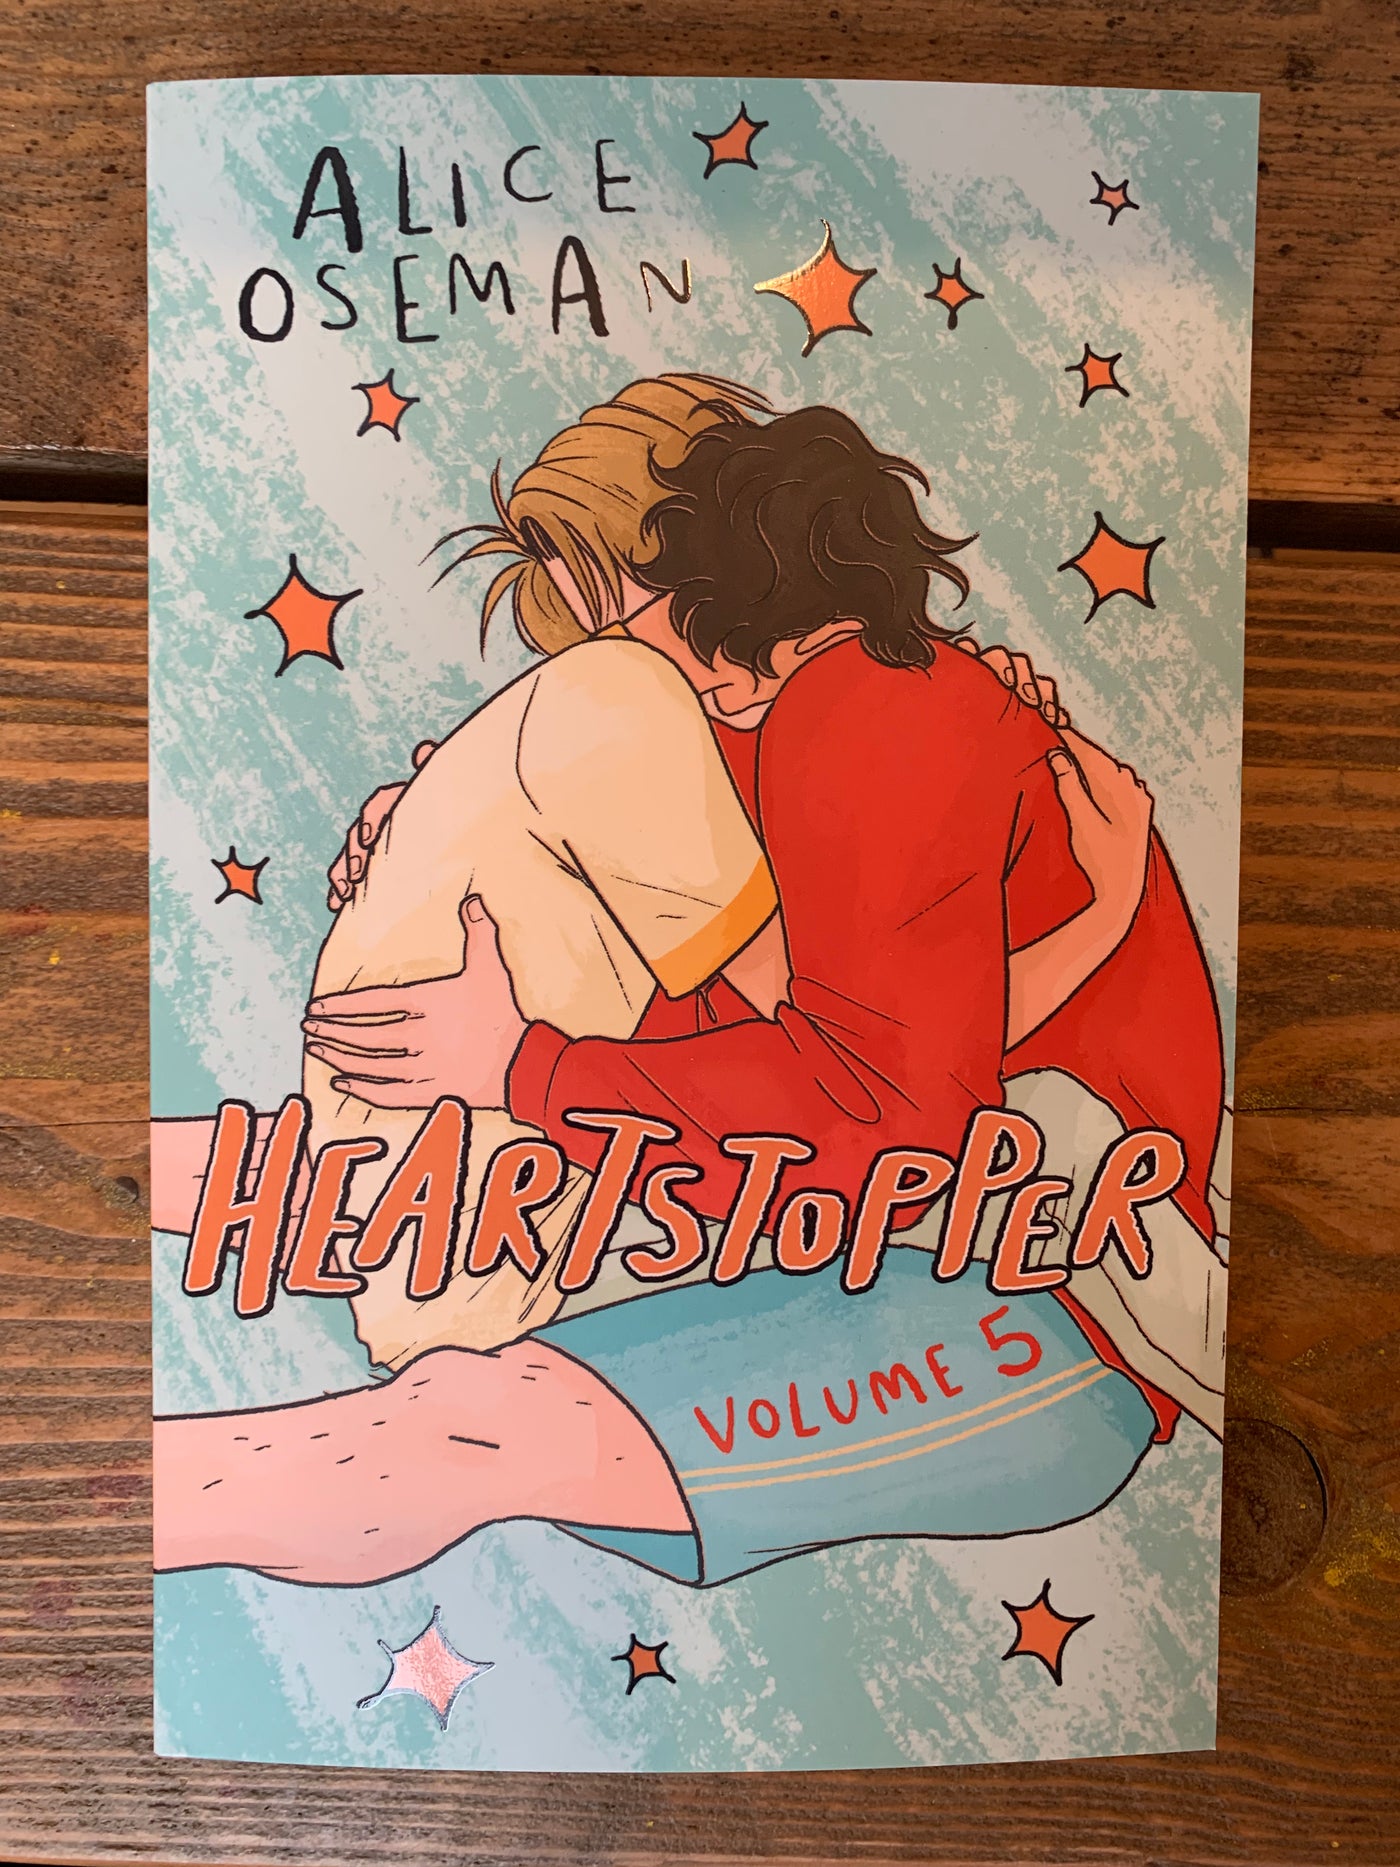 Heartstopper Volume 5 – The Feminist Bookshop